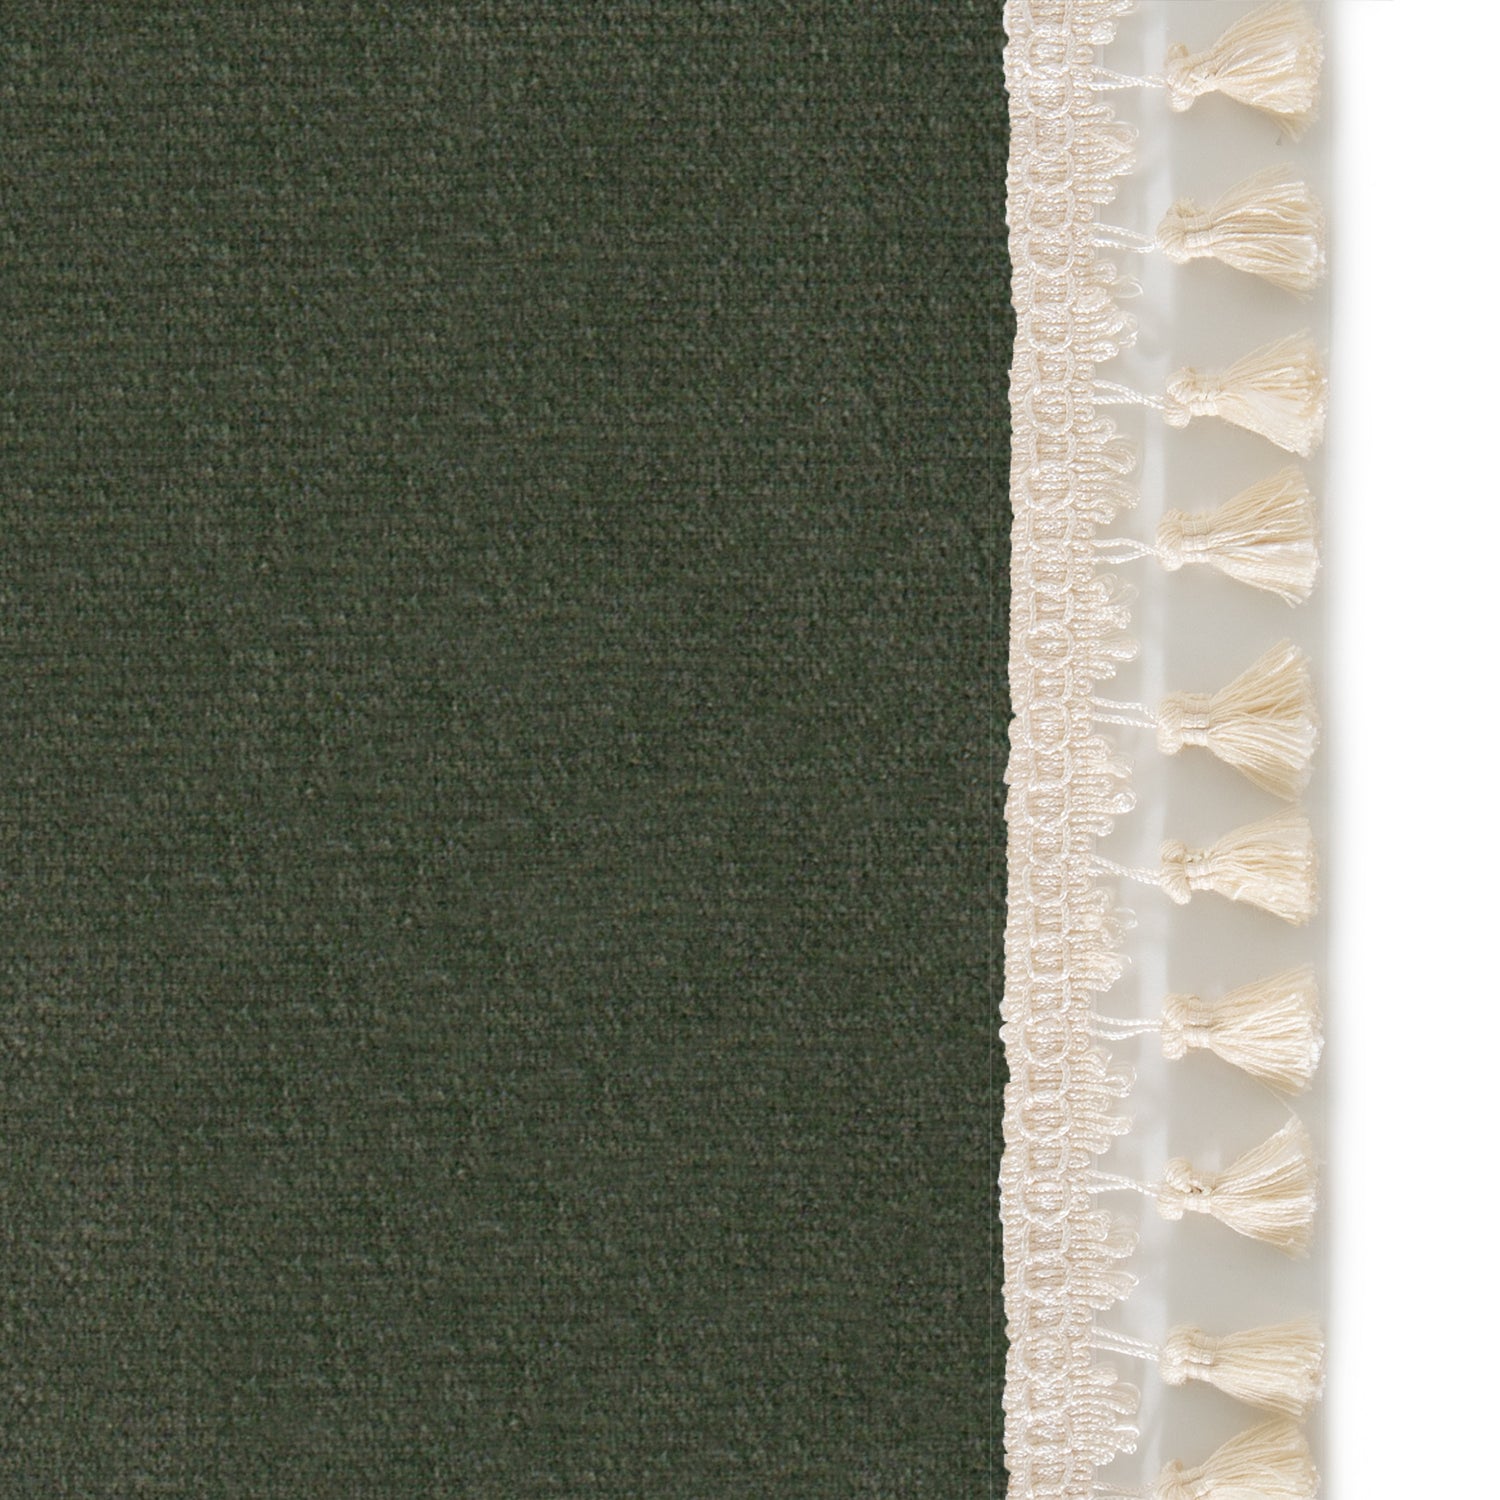 Upclose picture of Fern Velvet custom curtain with cream tassel trim